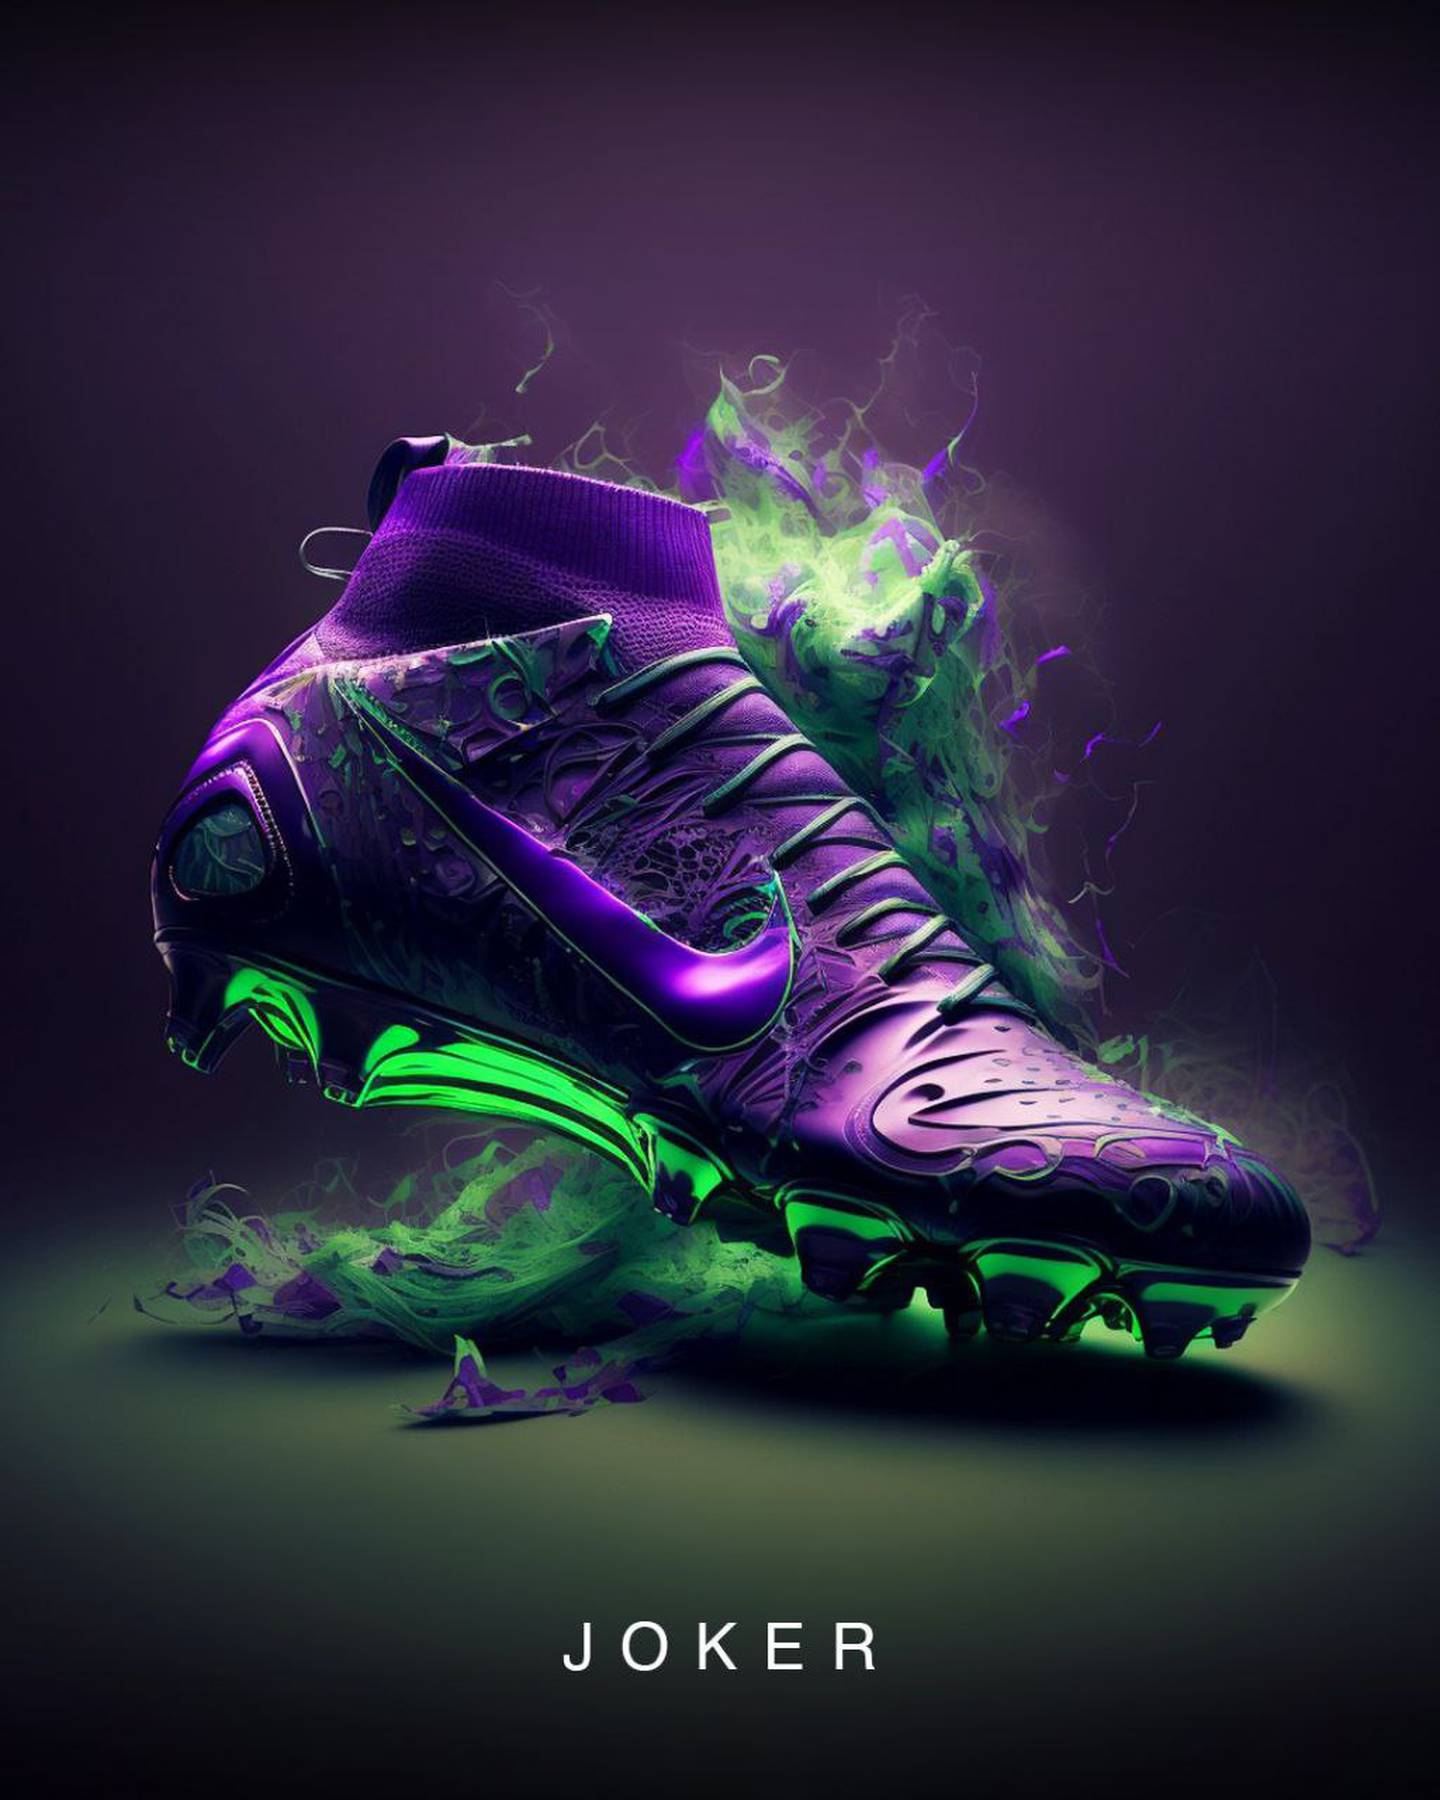 Zapatillas de DC para Nike creadas por la Inteligencia Artificial Midjourney